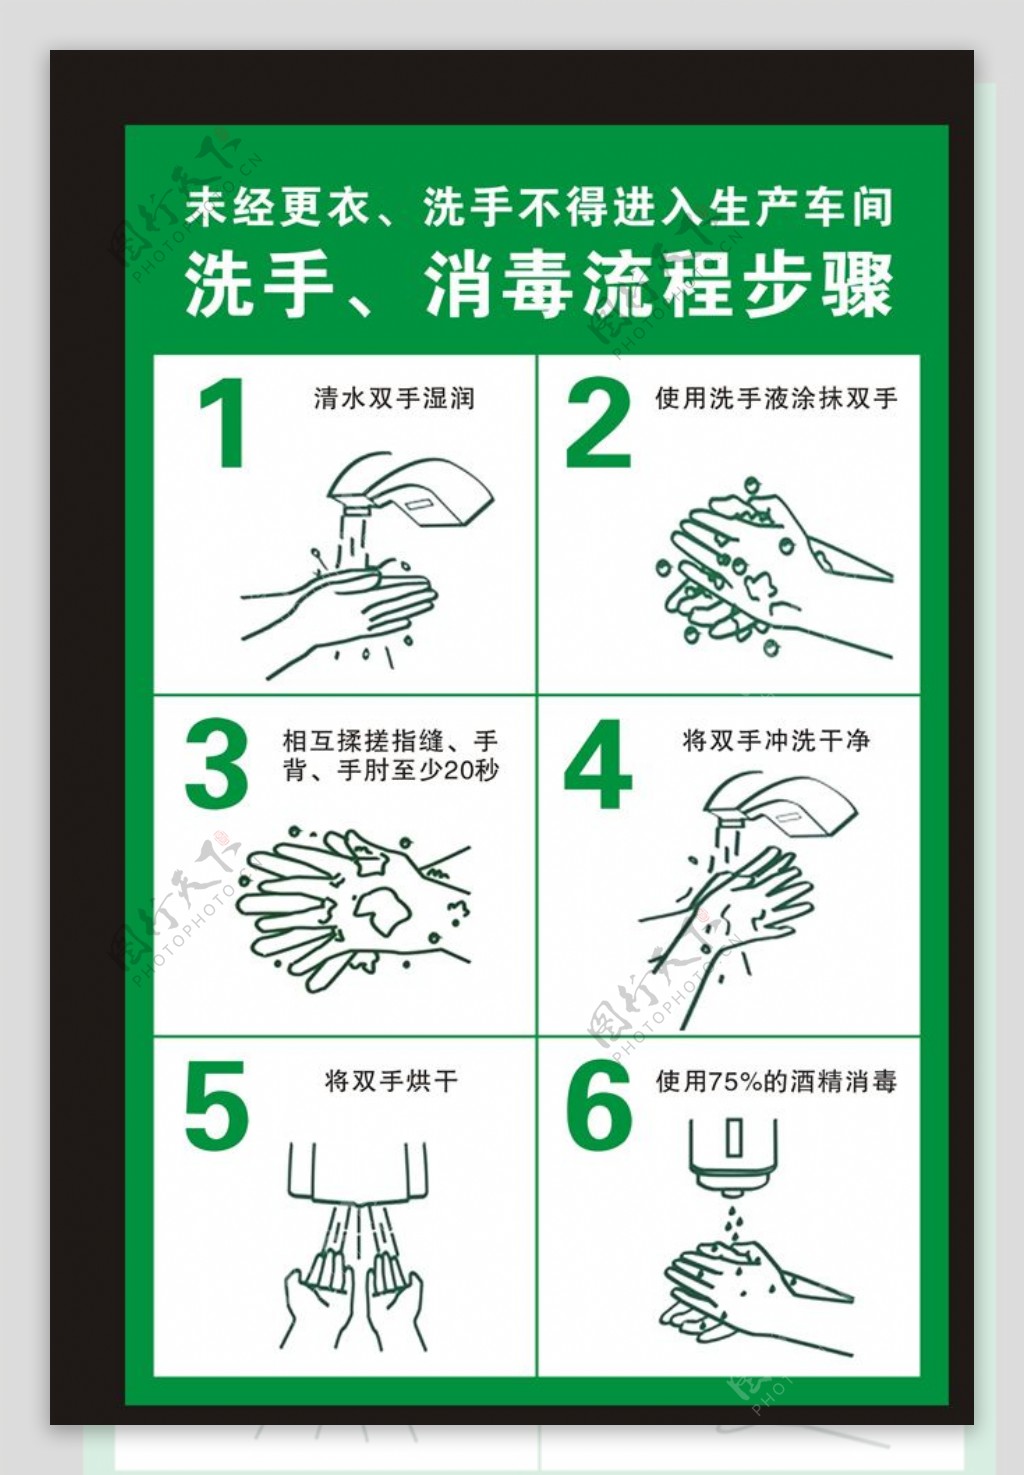 洗手消毒流程步骤